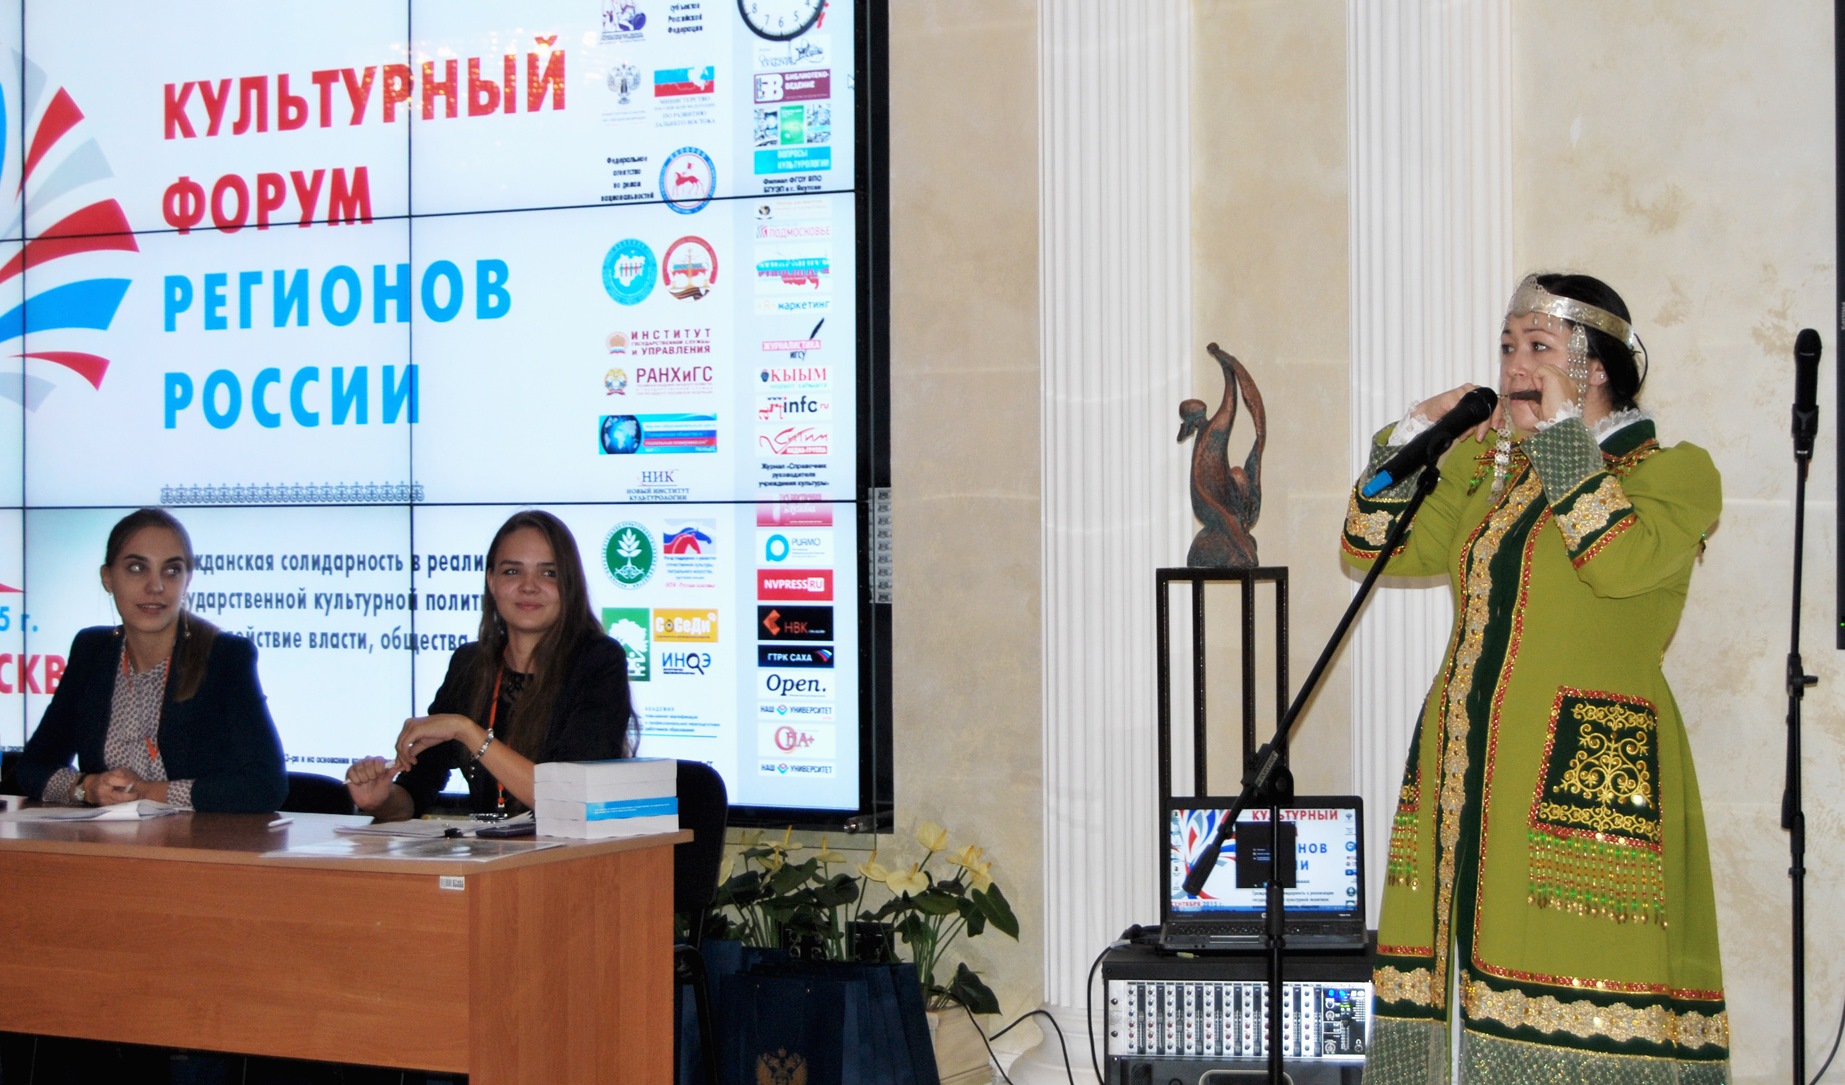 Культурный форум регионов России начинает свою работу